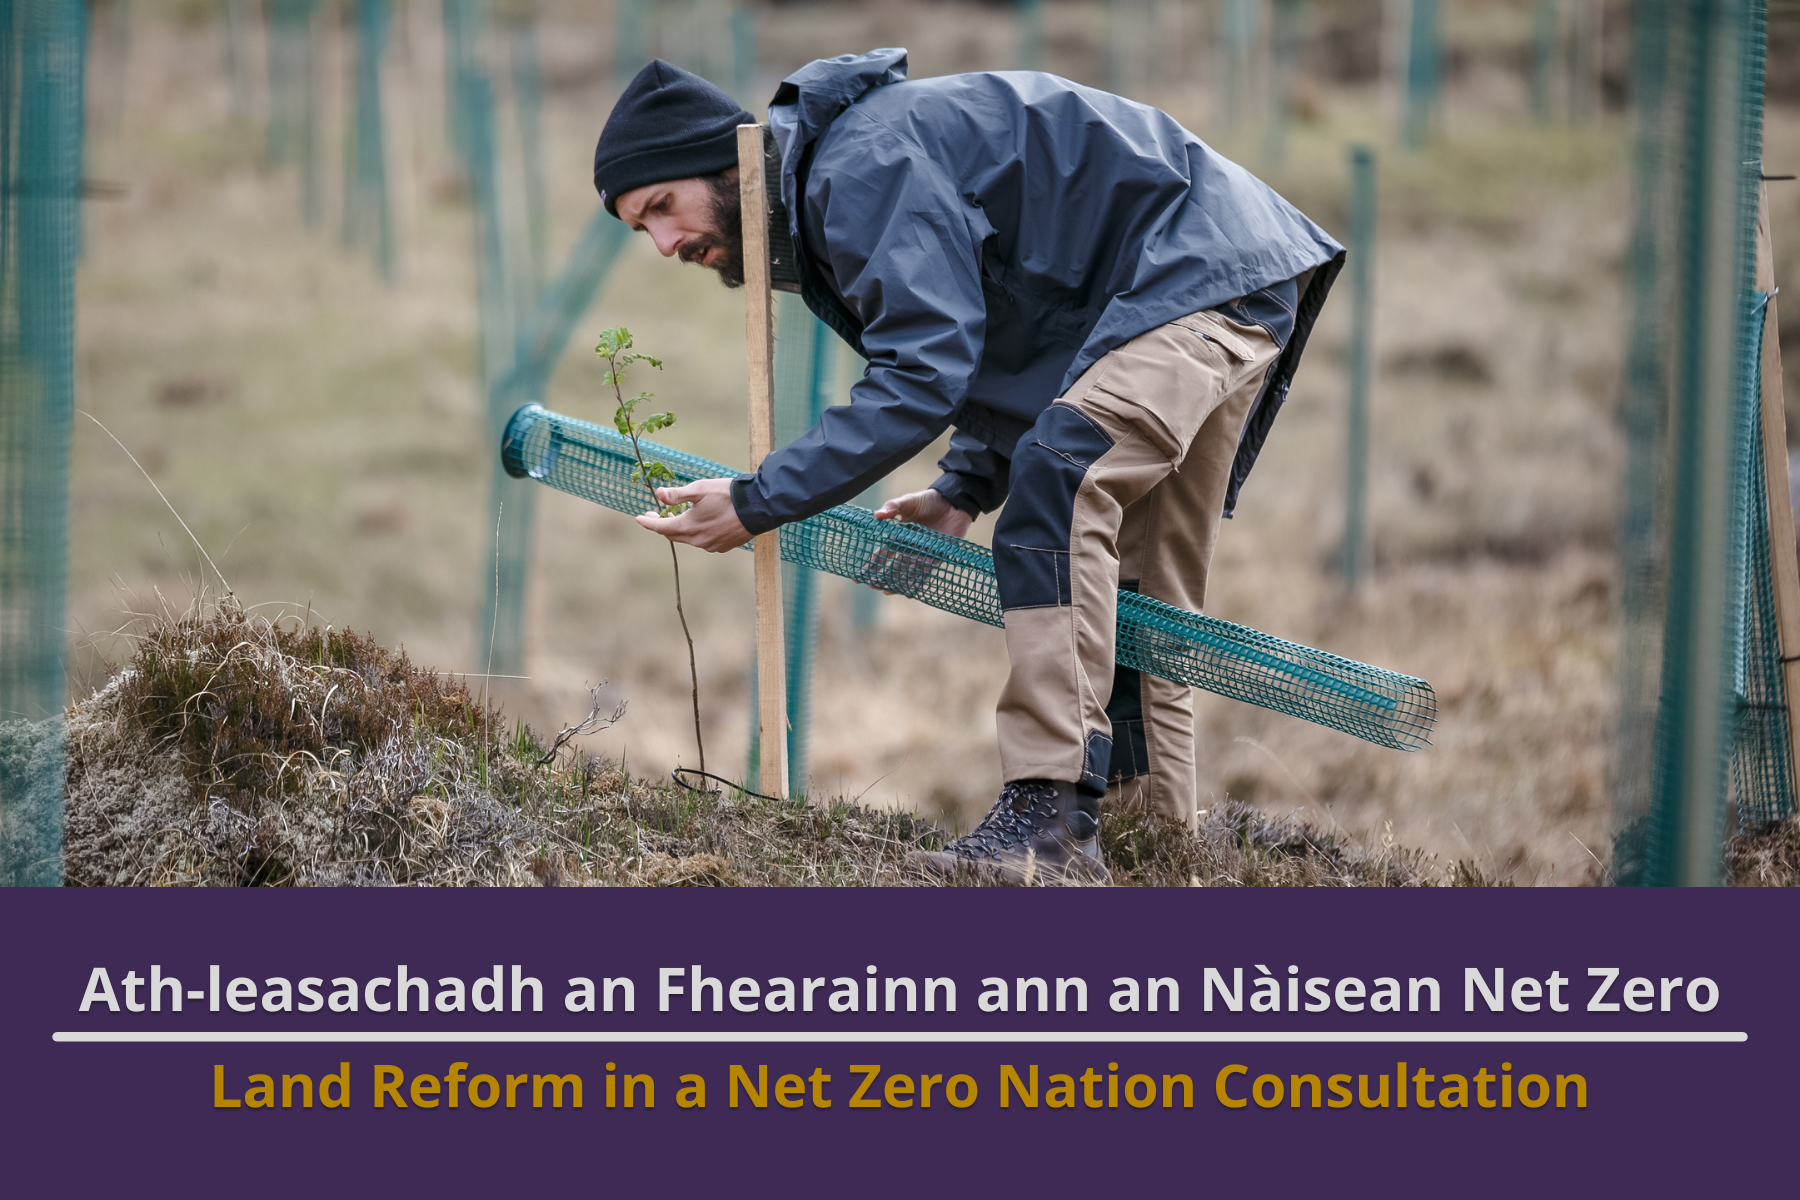 Land Reform in a Net Zero Nation